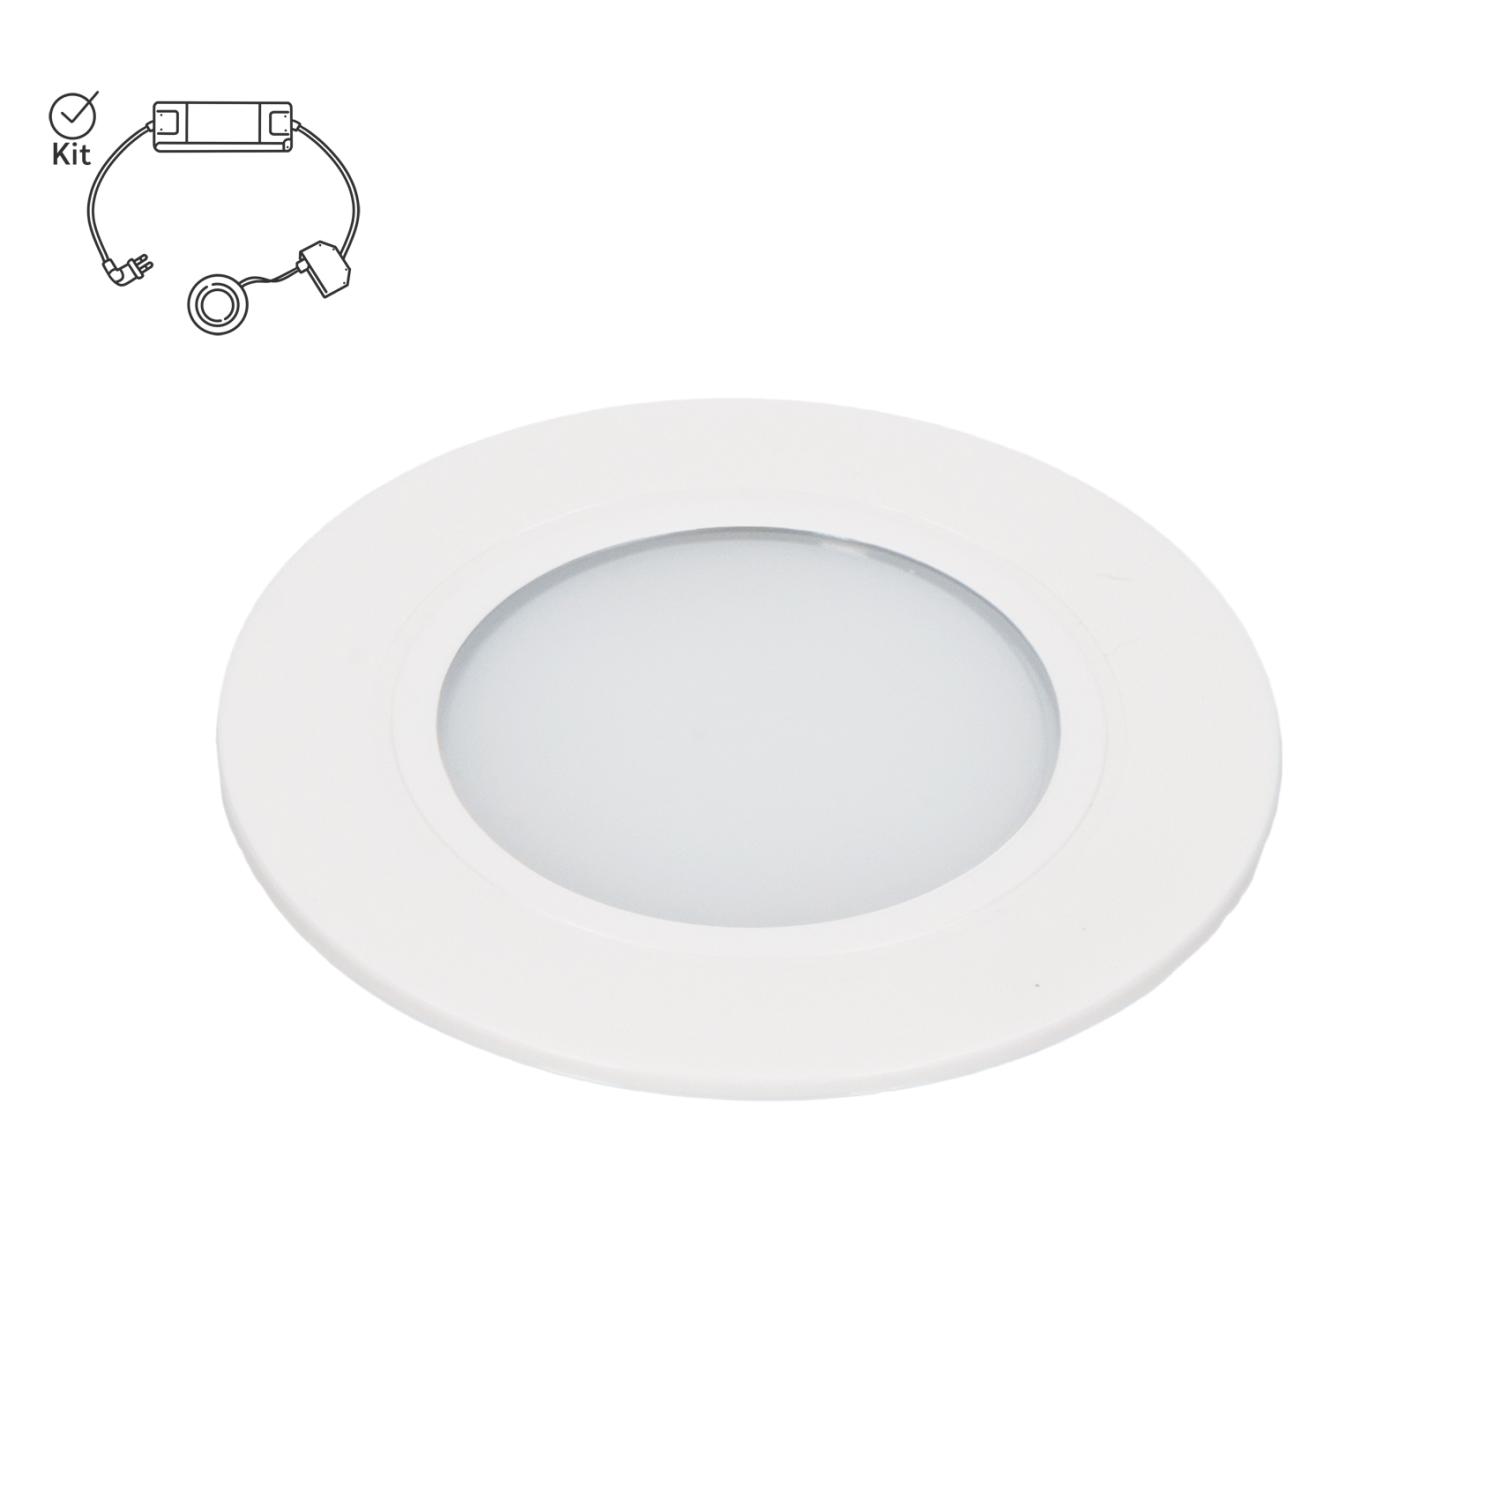 LED dimbar spotlight i vit finish med symbol som visar att produkten köps komplett i ett kit med drivdon.